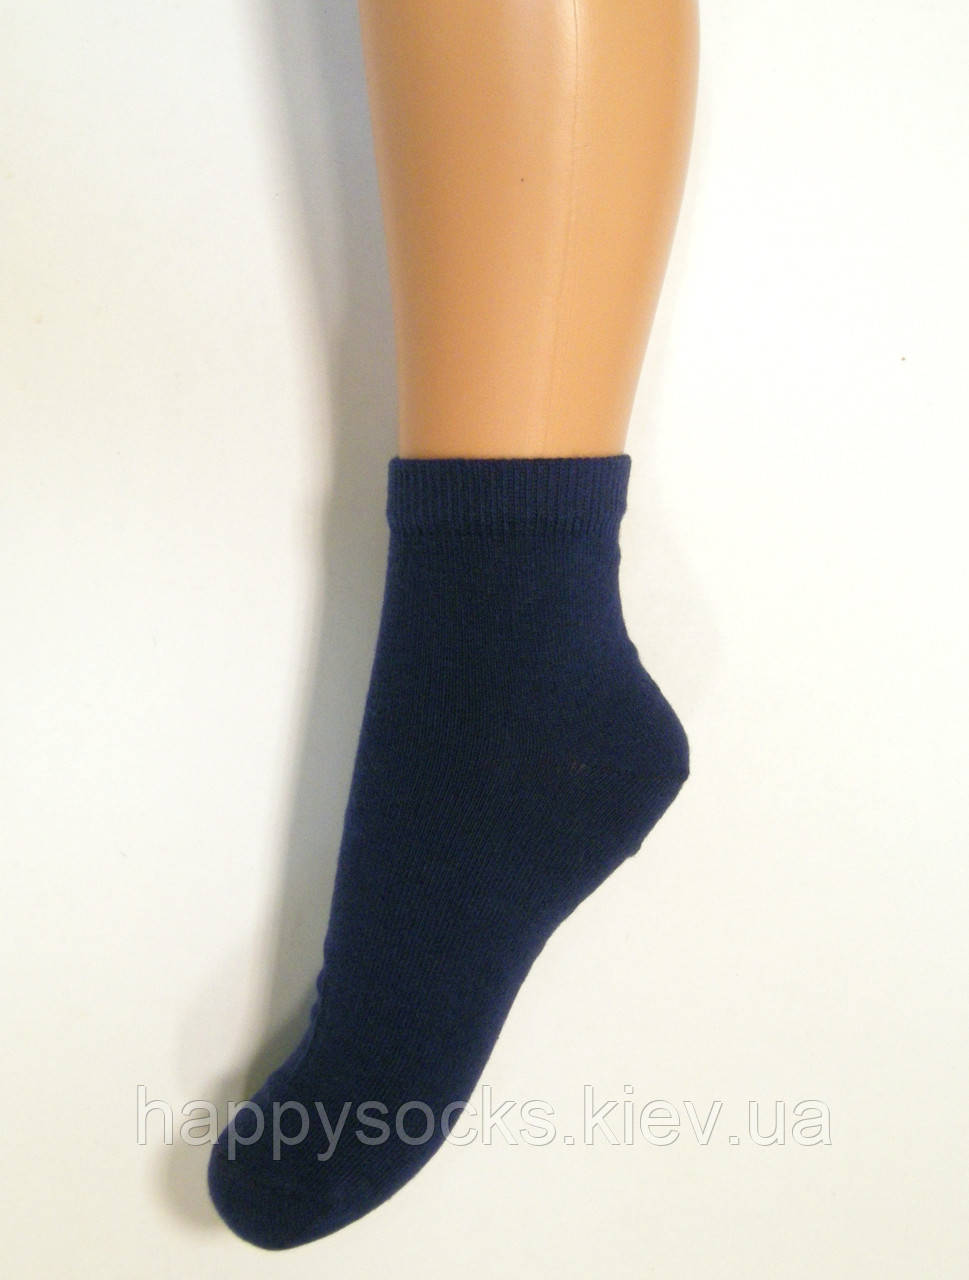 Шкарпетки дитячі середньої довжини темно-синього кольору